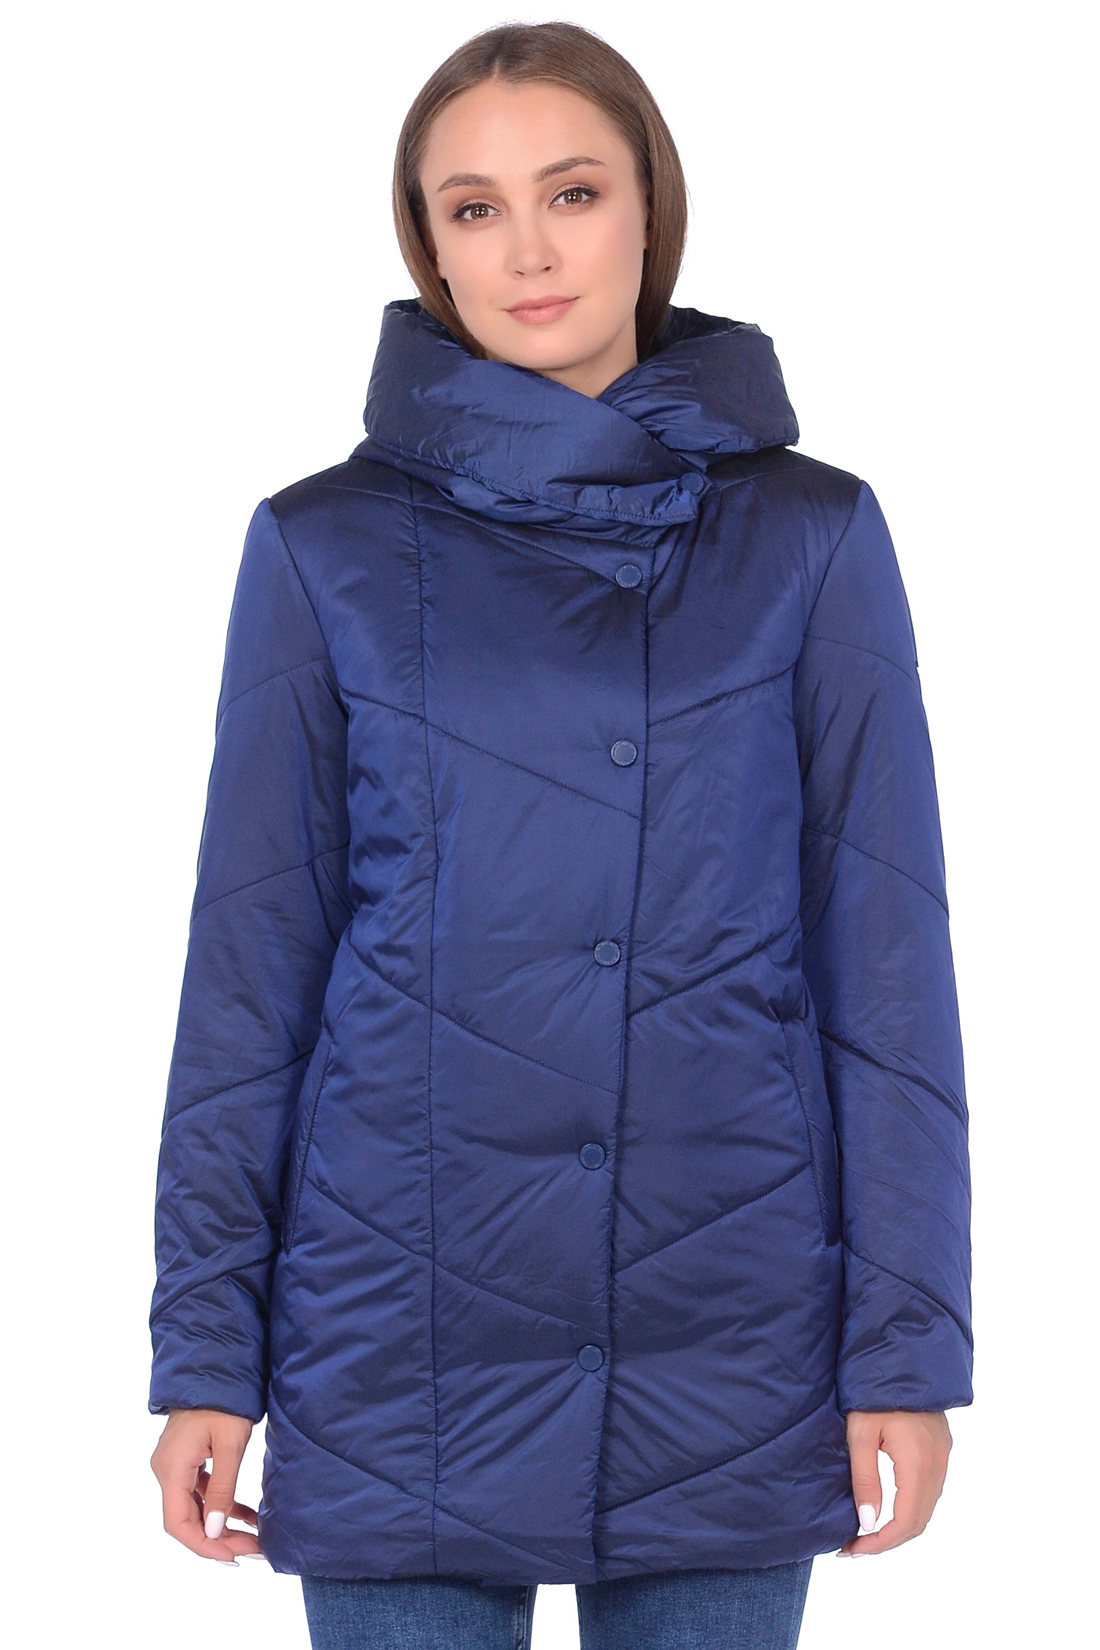 Куртка с капюшоном и асимметричной застёжкой (арт. baon B038524), размер L, цвет синий Куртка с капюшоном и асимметричной застёжкой (арт. baon B038524) - фото 1